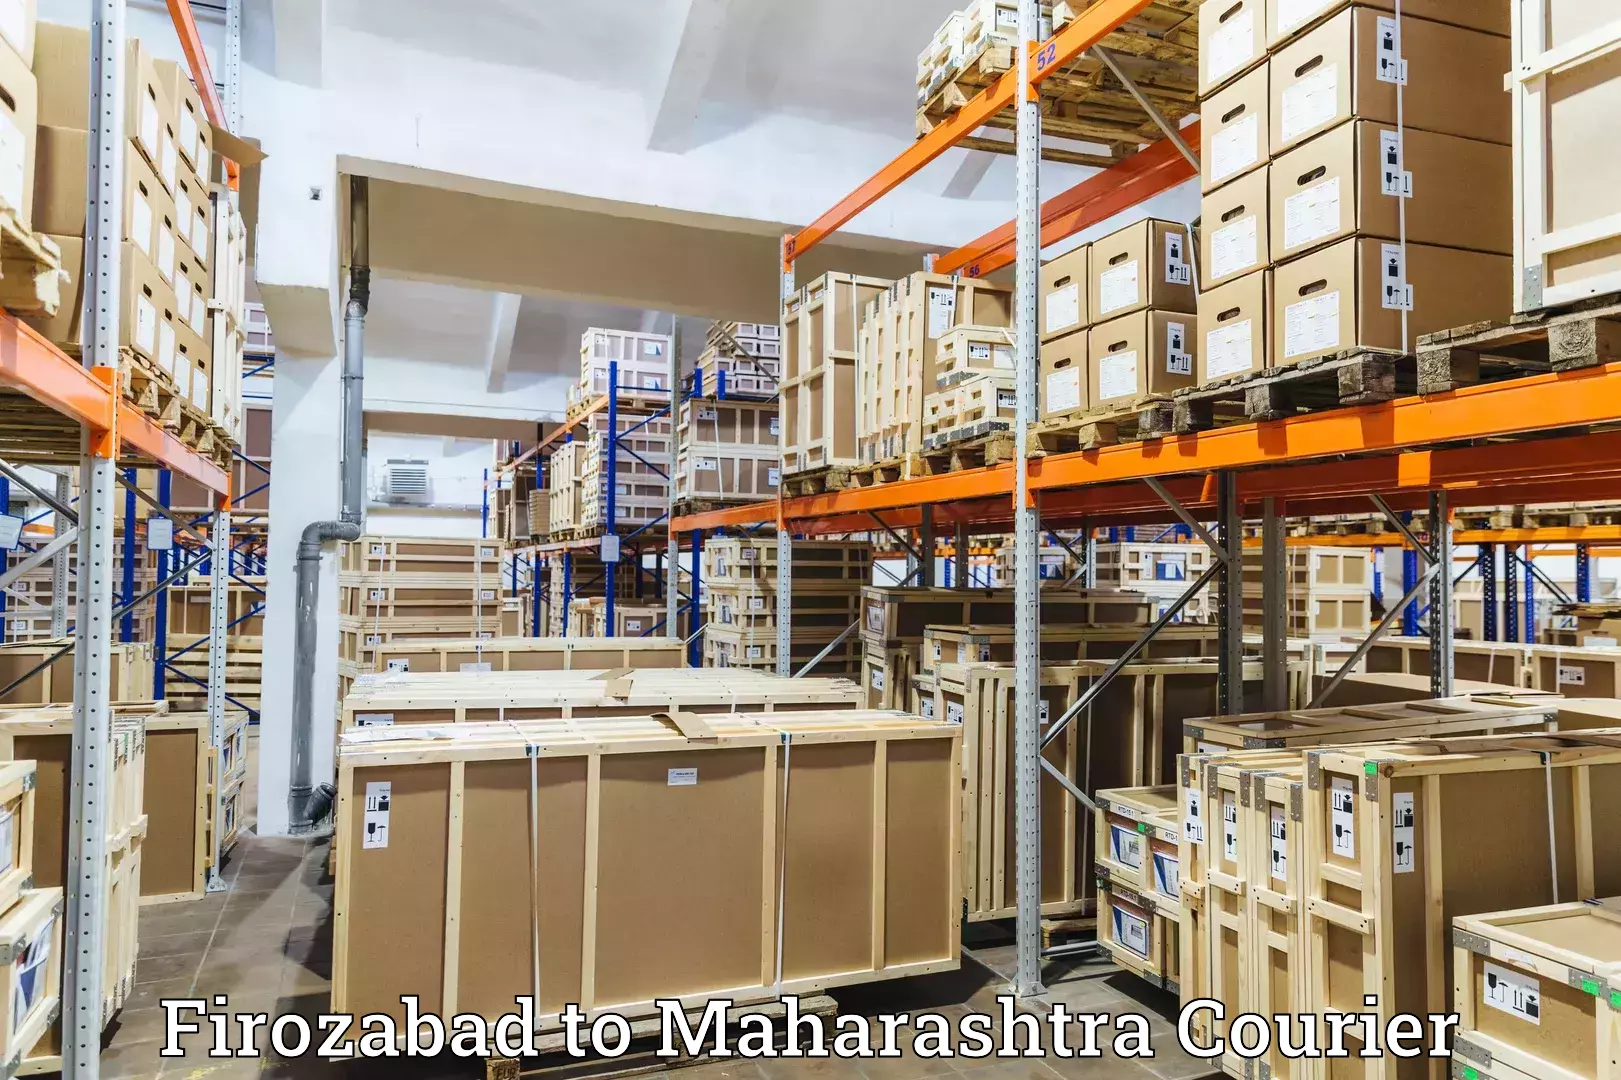 Advanced shipping technology Firozabad to Gadchandur